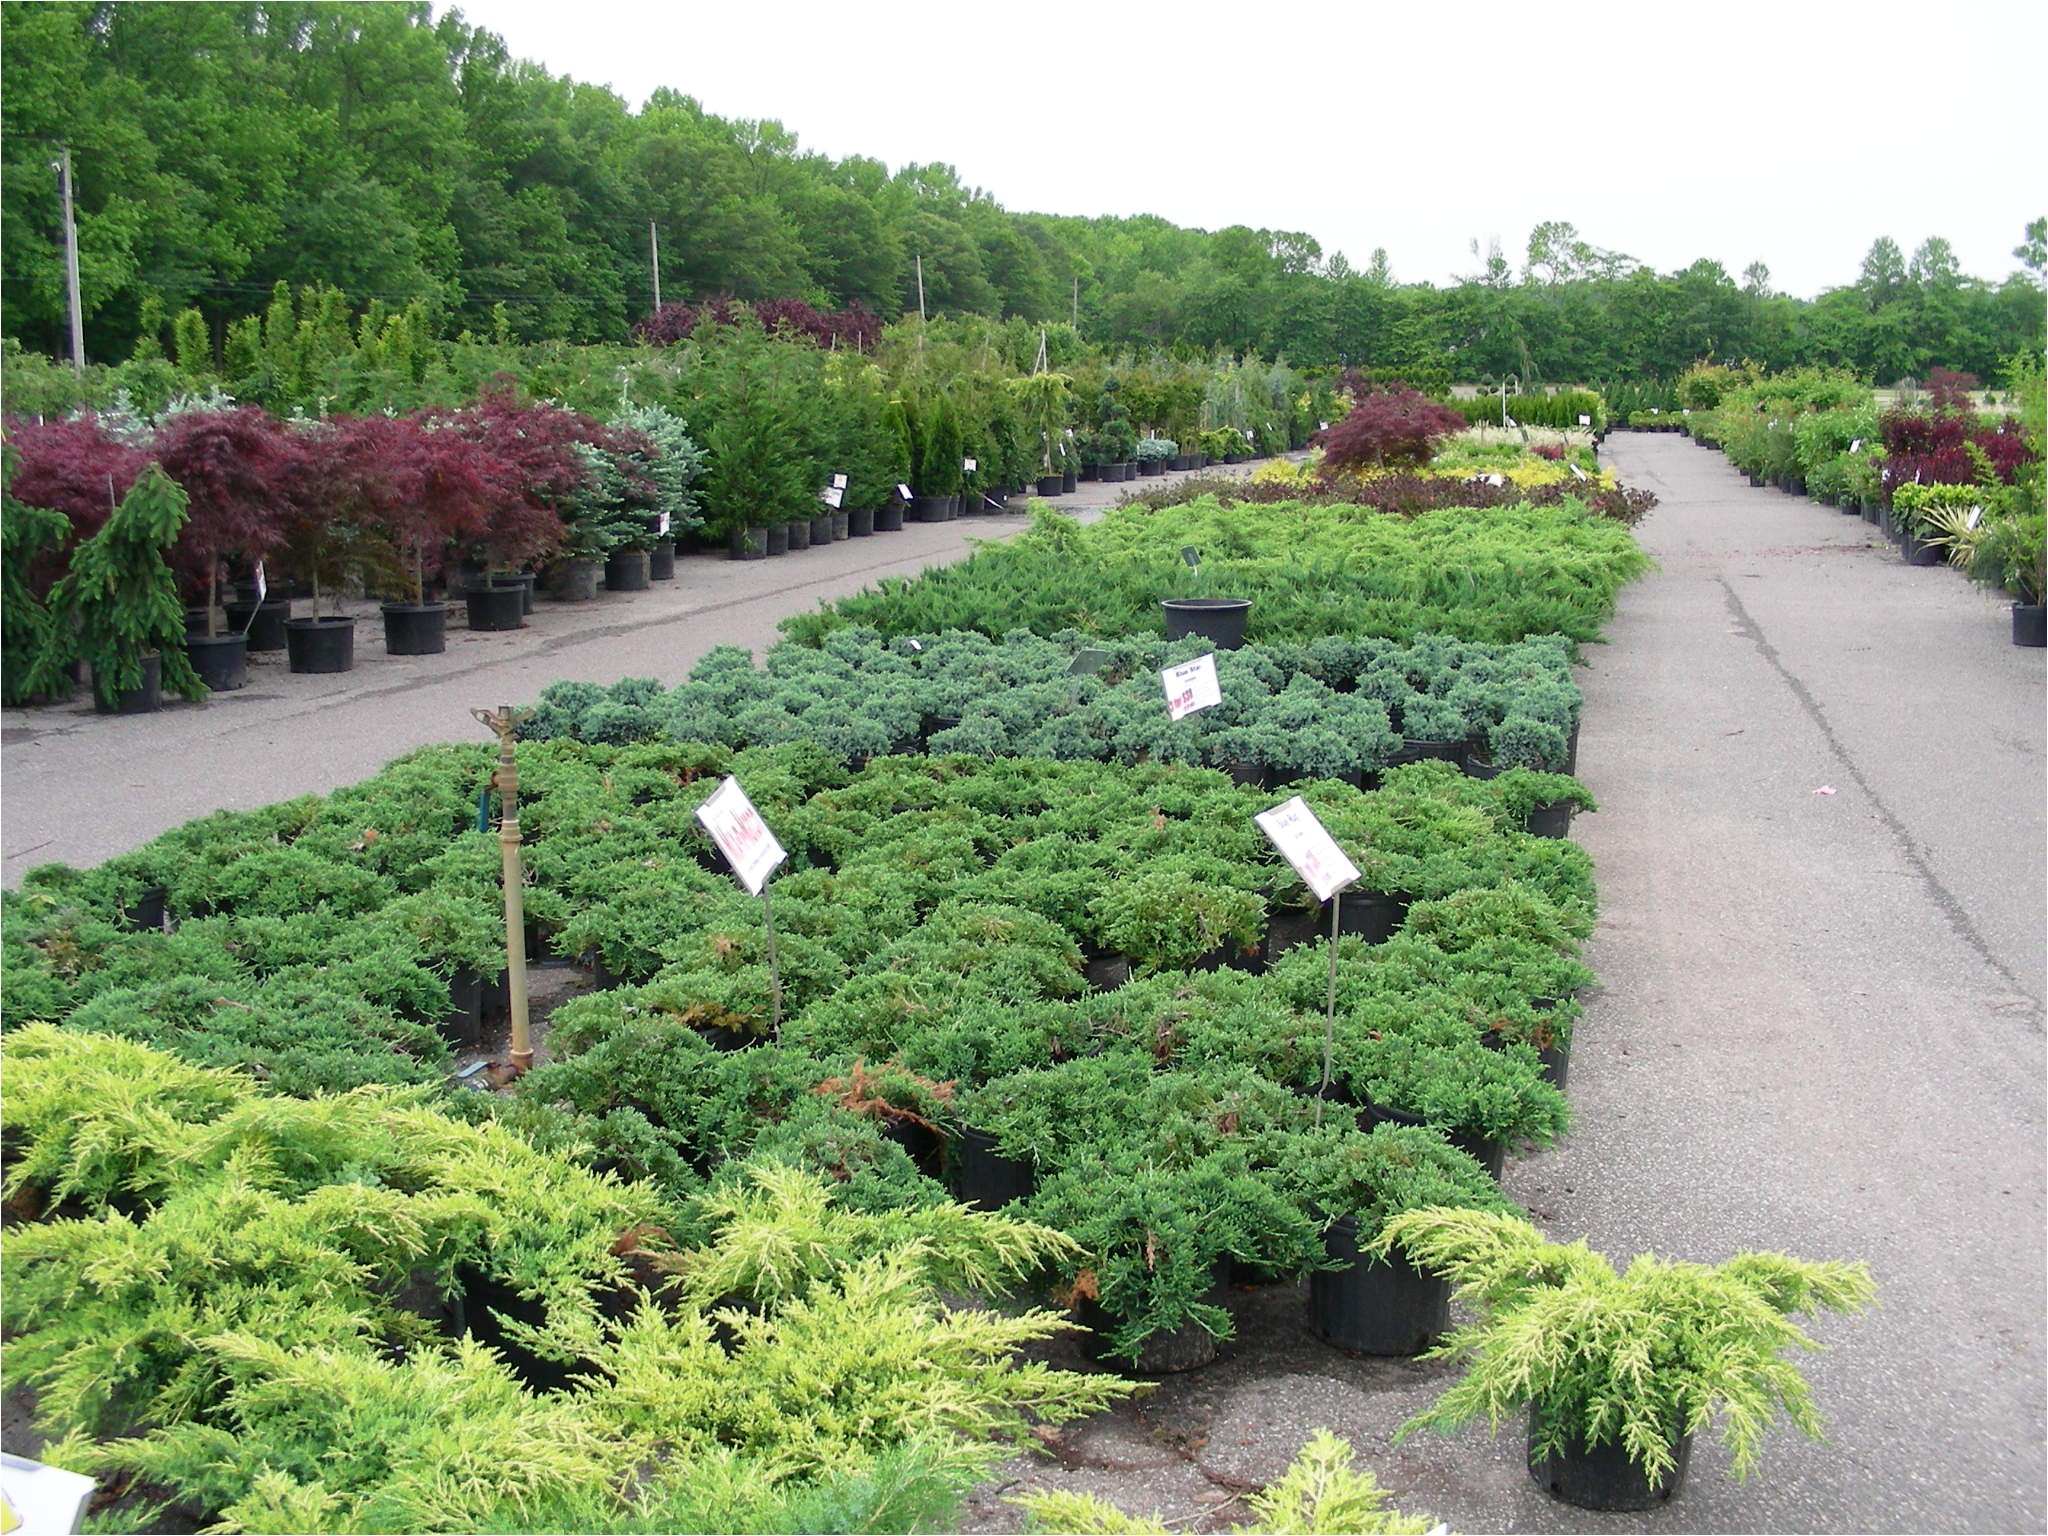 local nurseries plants trees wholesale